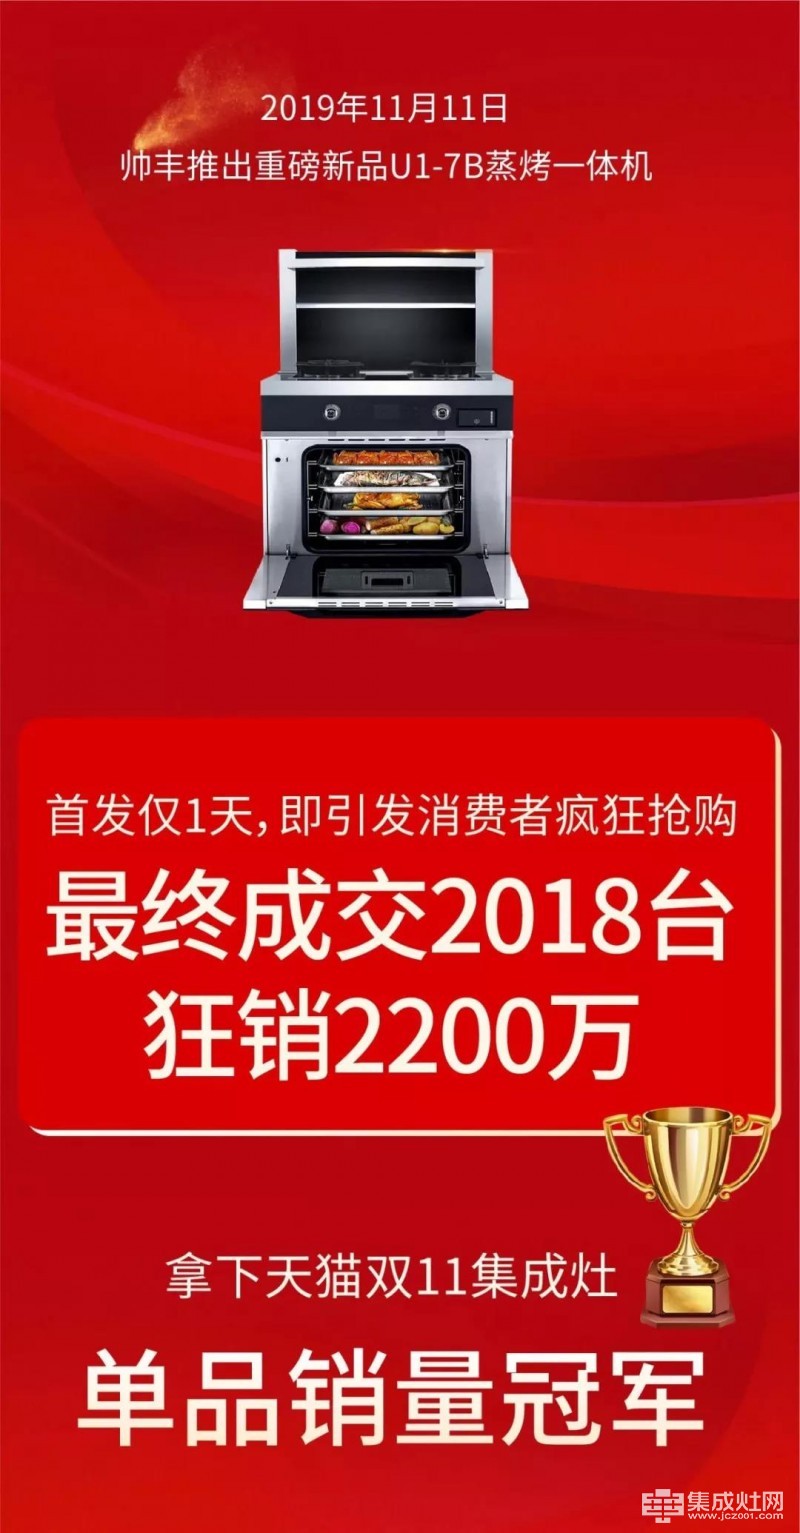 天猫618冠军 双11销量王 2019帅丰集成灶又赢了